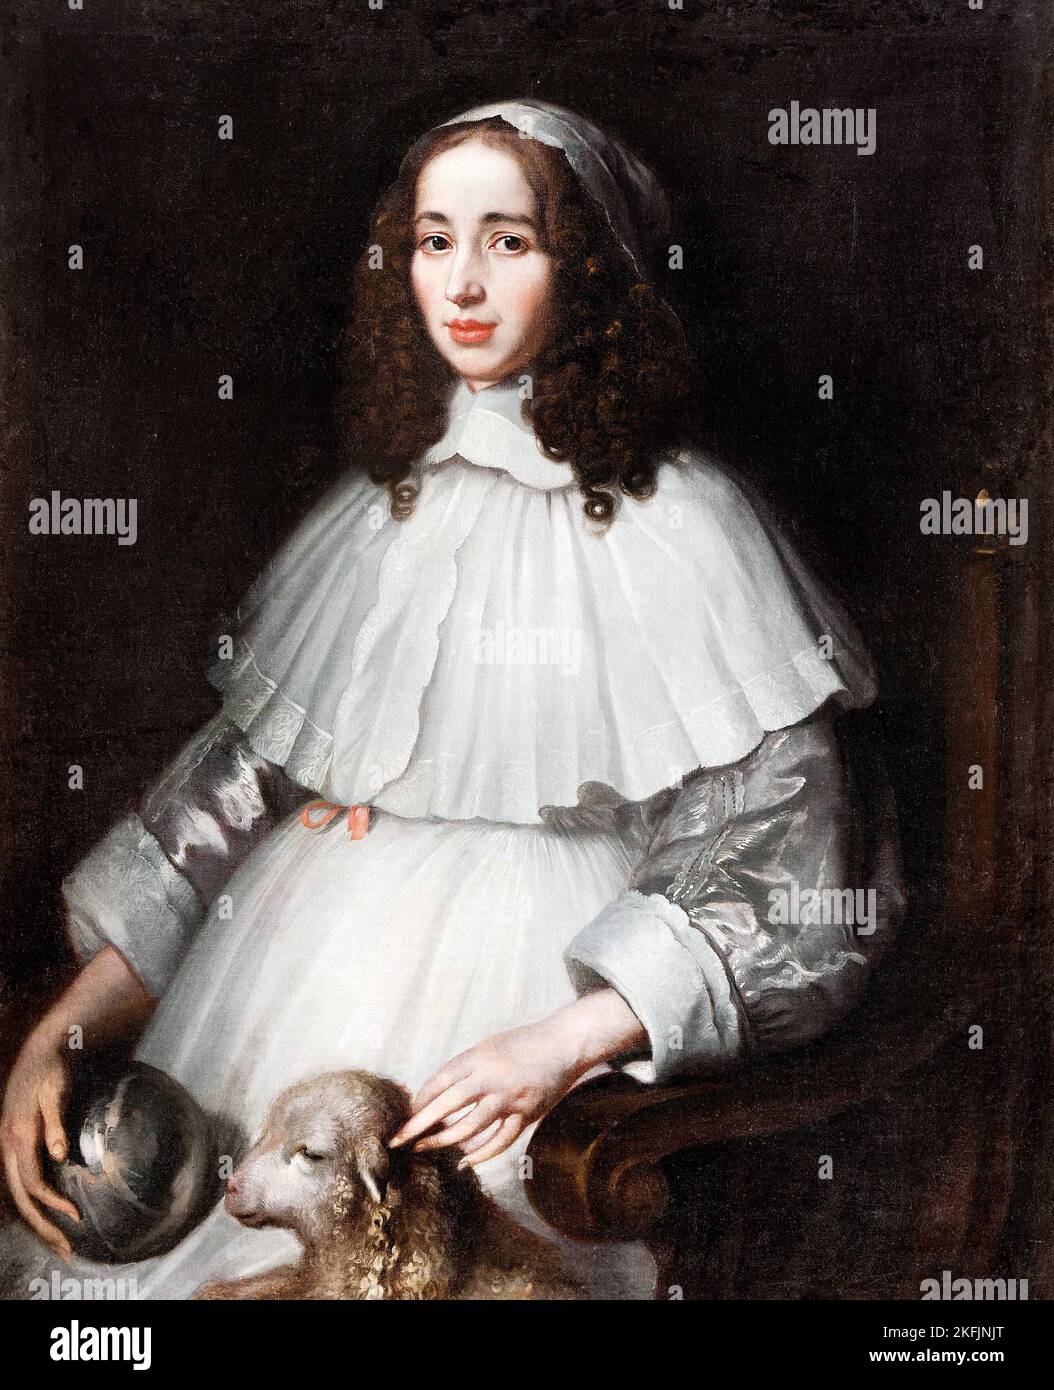 Matthaus Merian; Anna Margareta von Haugwitz; Circa 1648-1651; Oil on canvas; Skokloster Castle, Habo, Sweden. Stock Photo